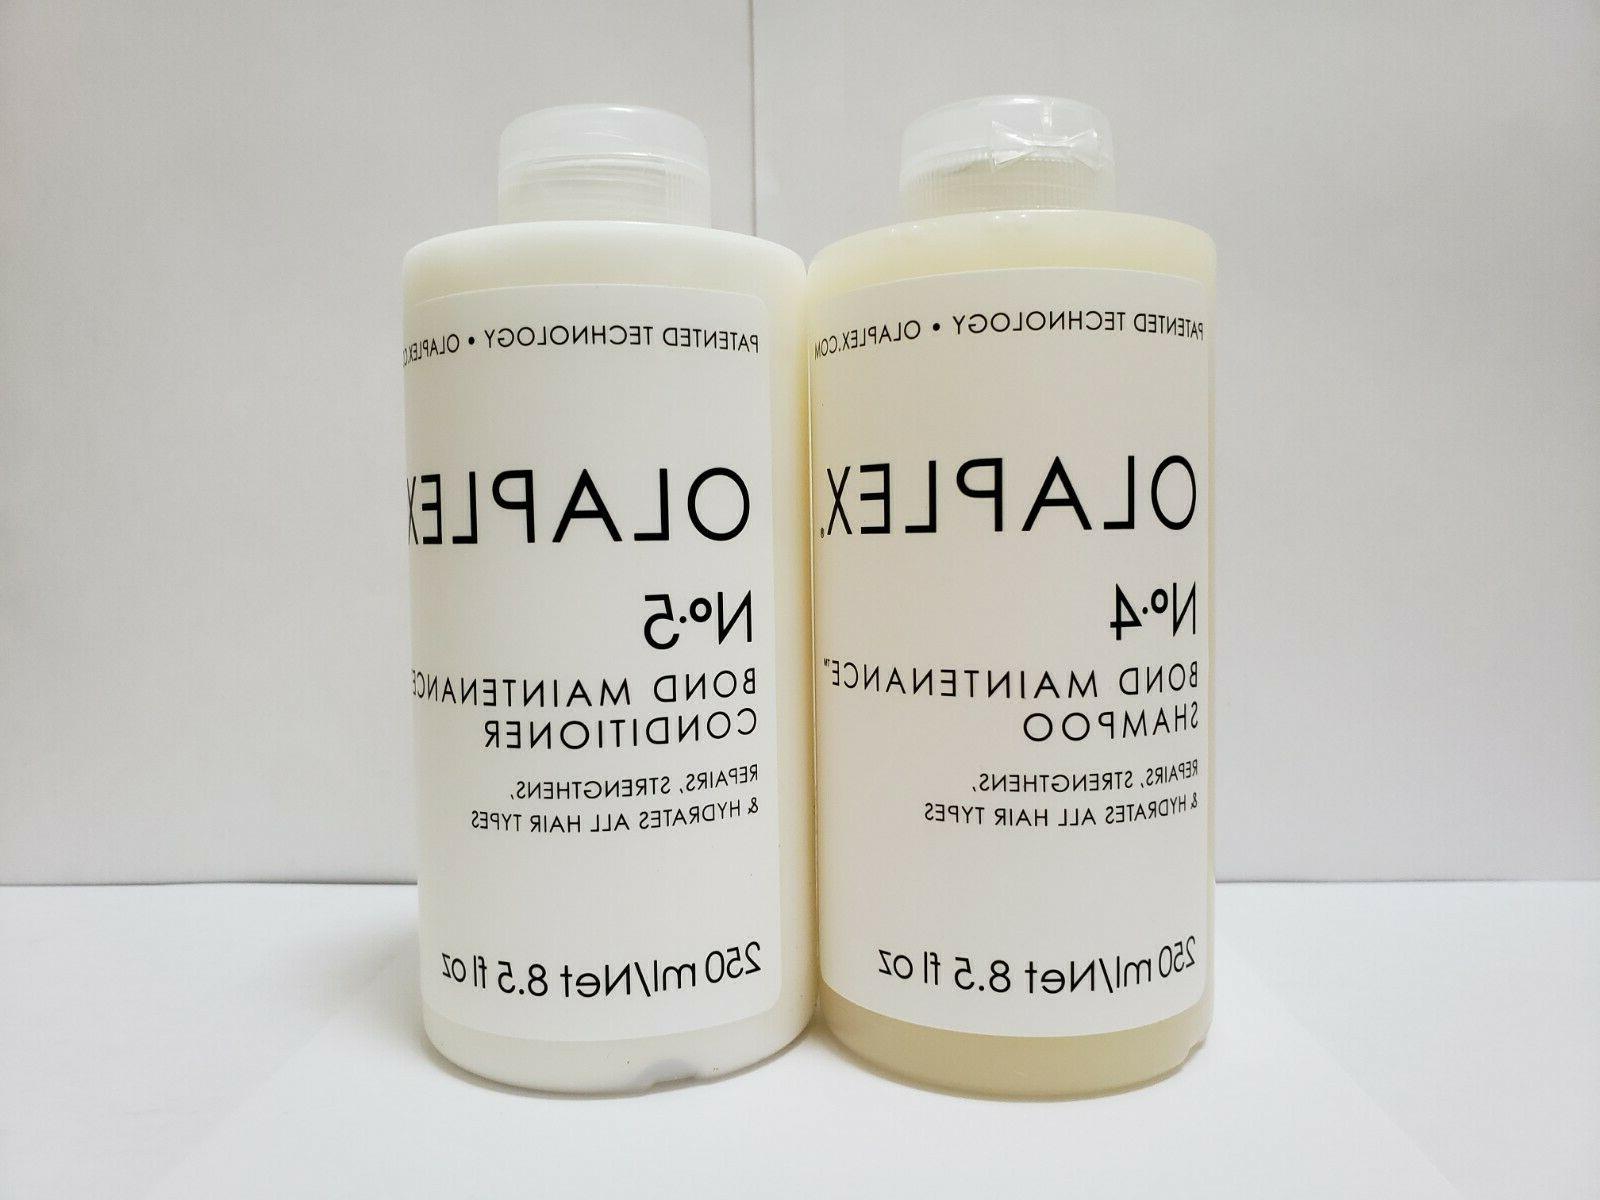 10. "Olaplex No.4 Bond Maintenance Shampoo" - wide 7